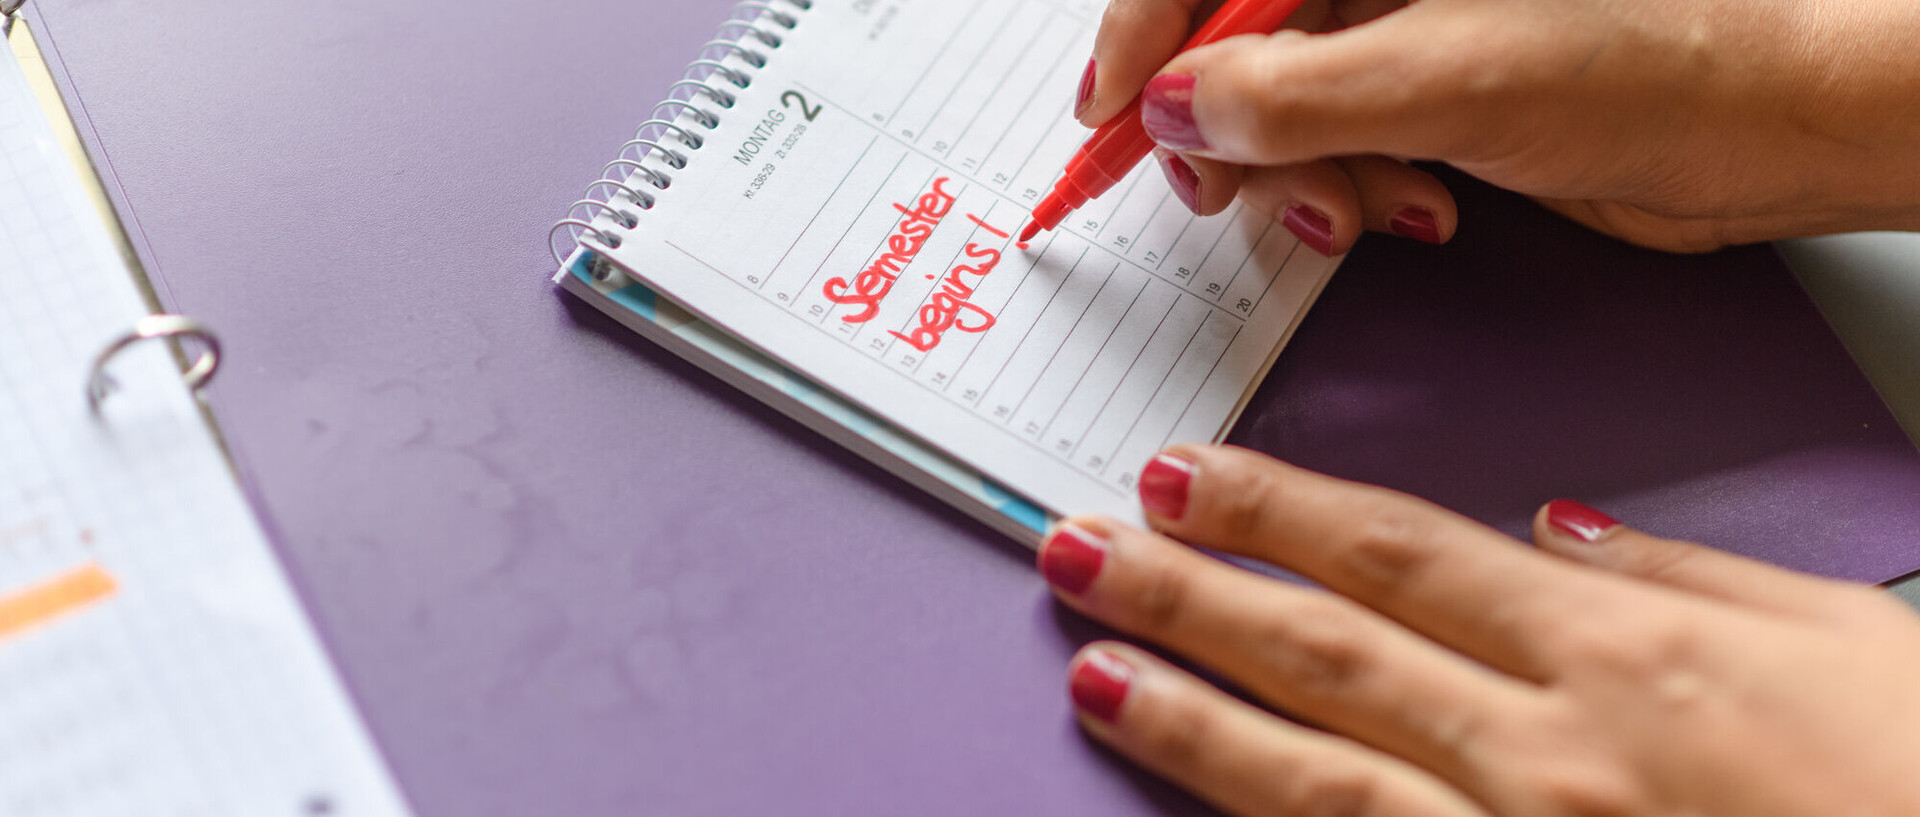 Eine Person schreibt mit Rotstift "Semester begins!" in einen Kalender.